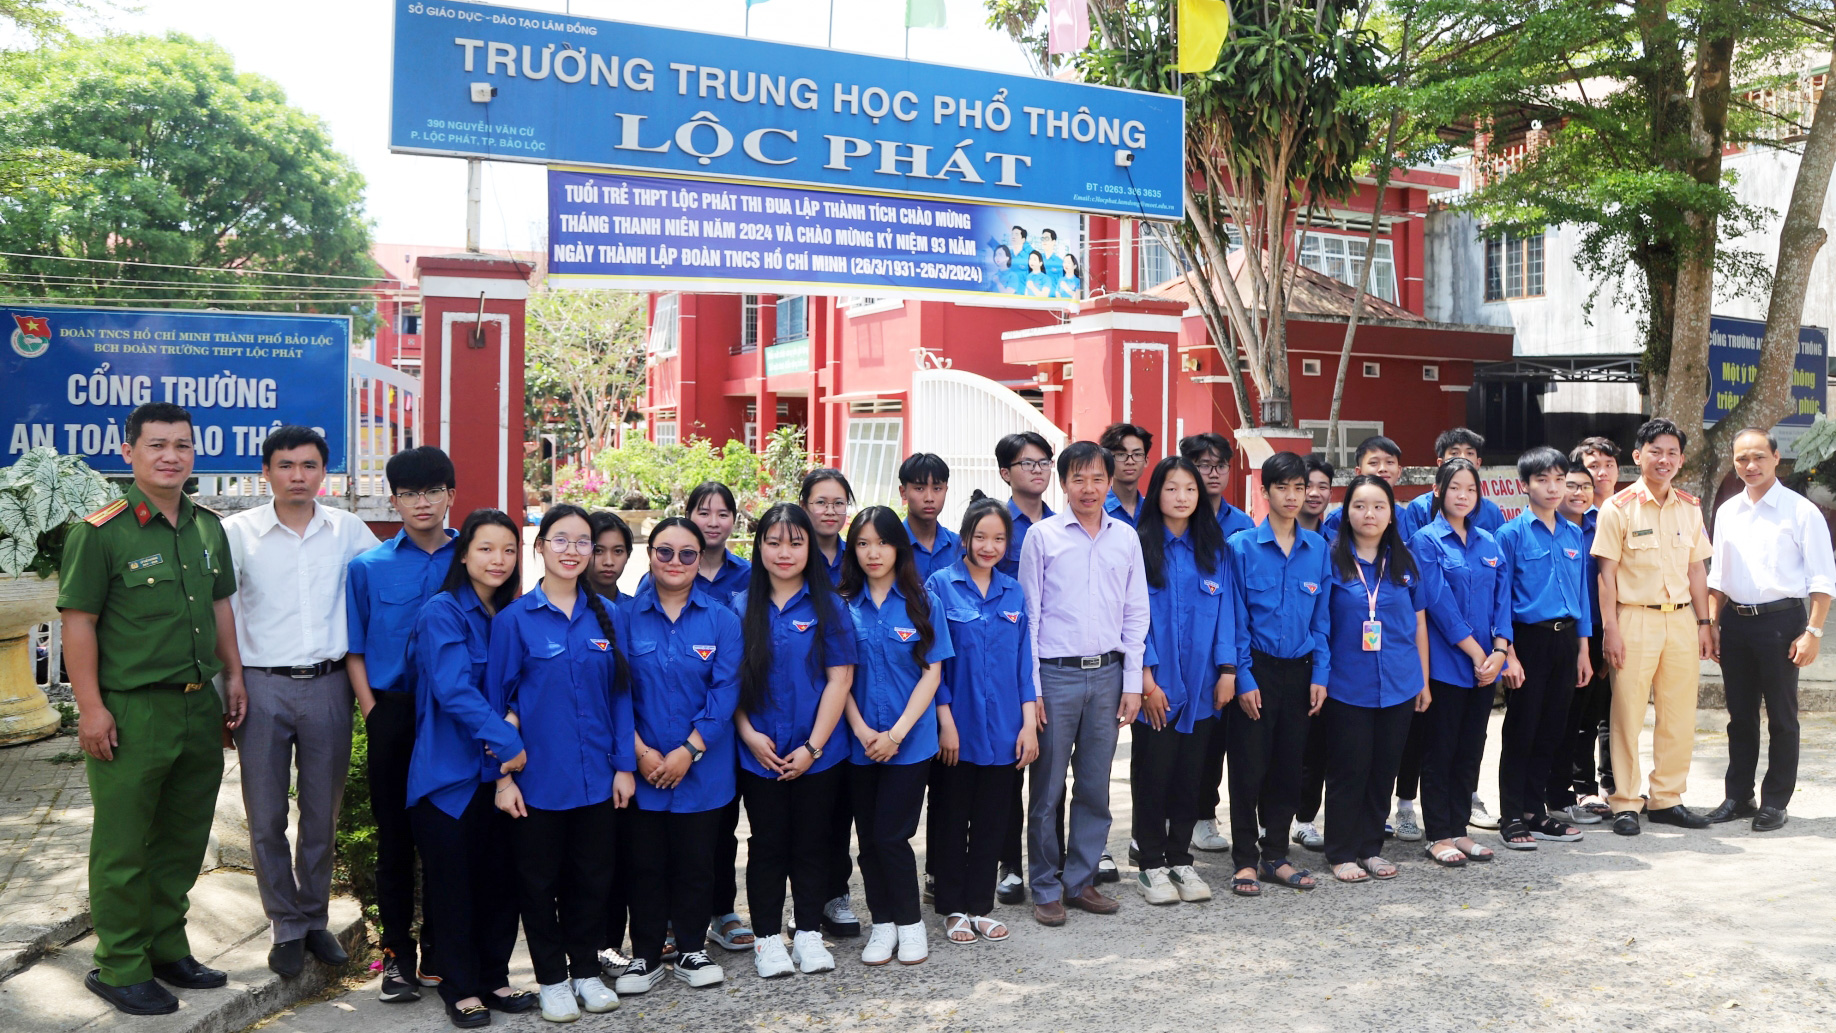 Trường THPT Lộc Phát ra mắt Mô hình Cổng trường an toàn giao thông